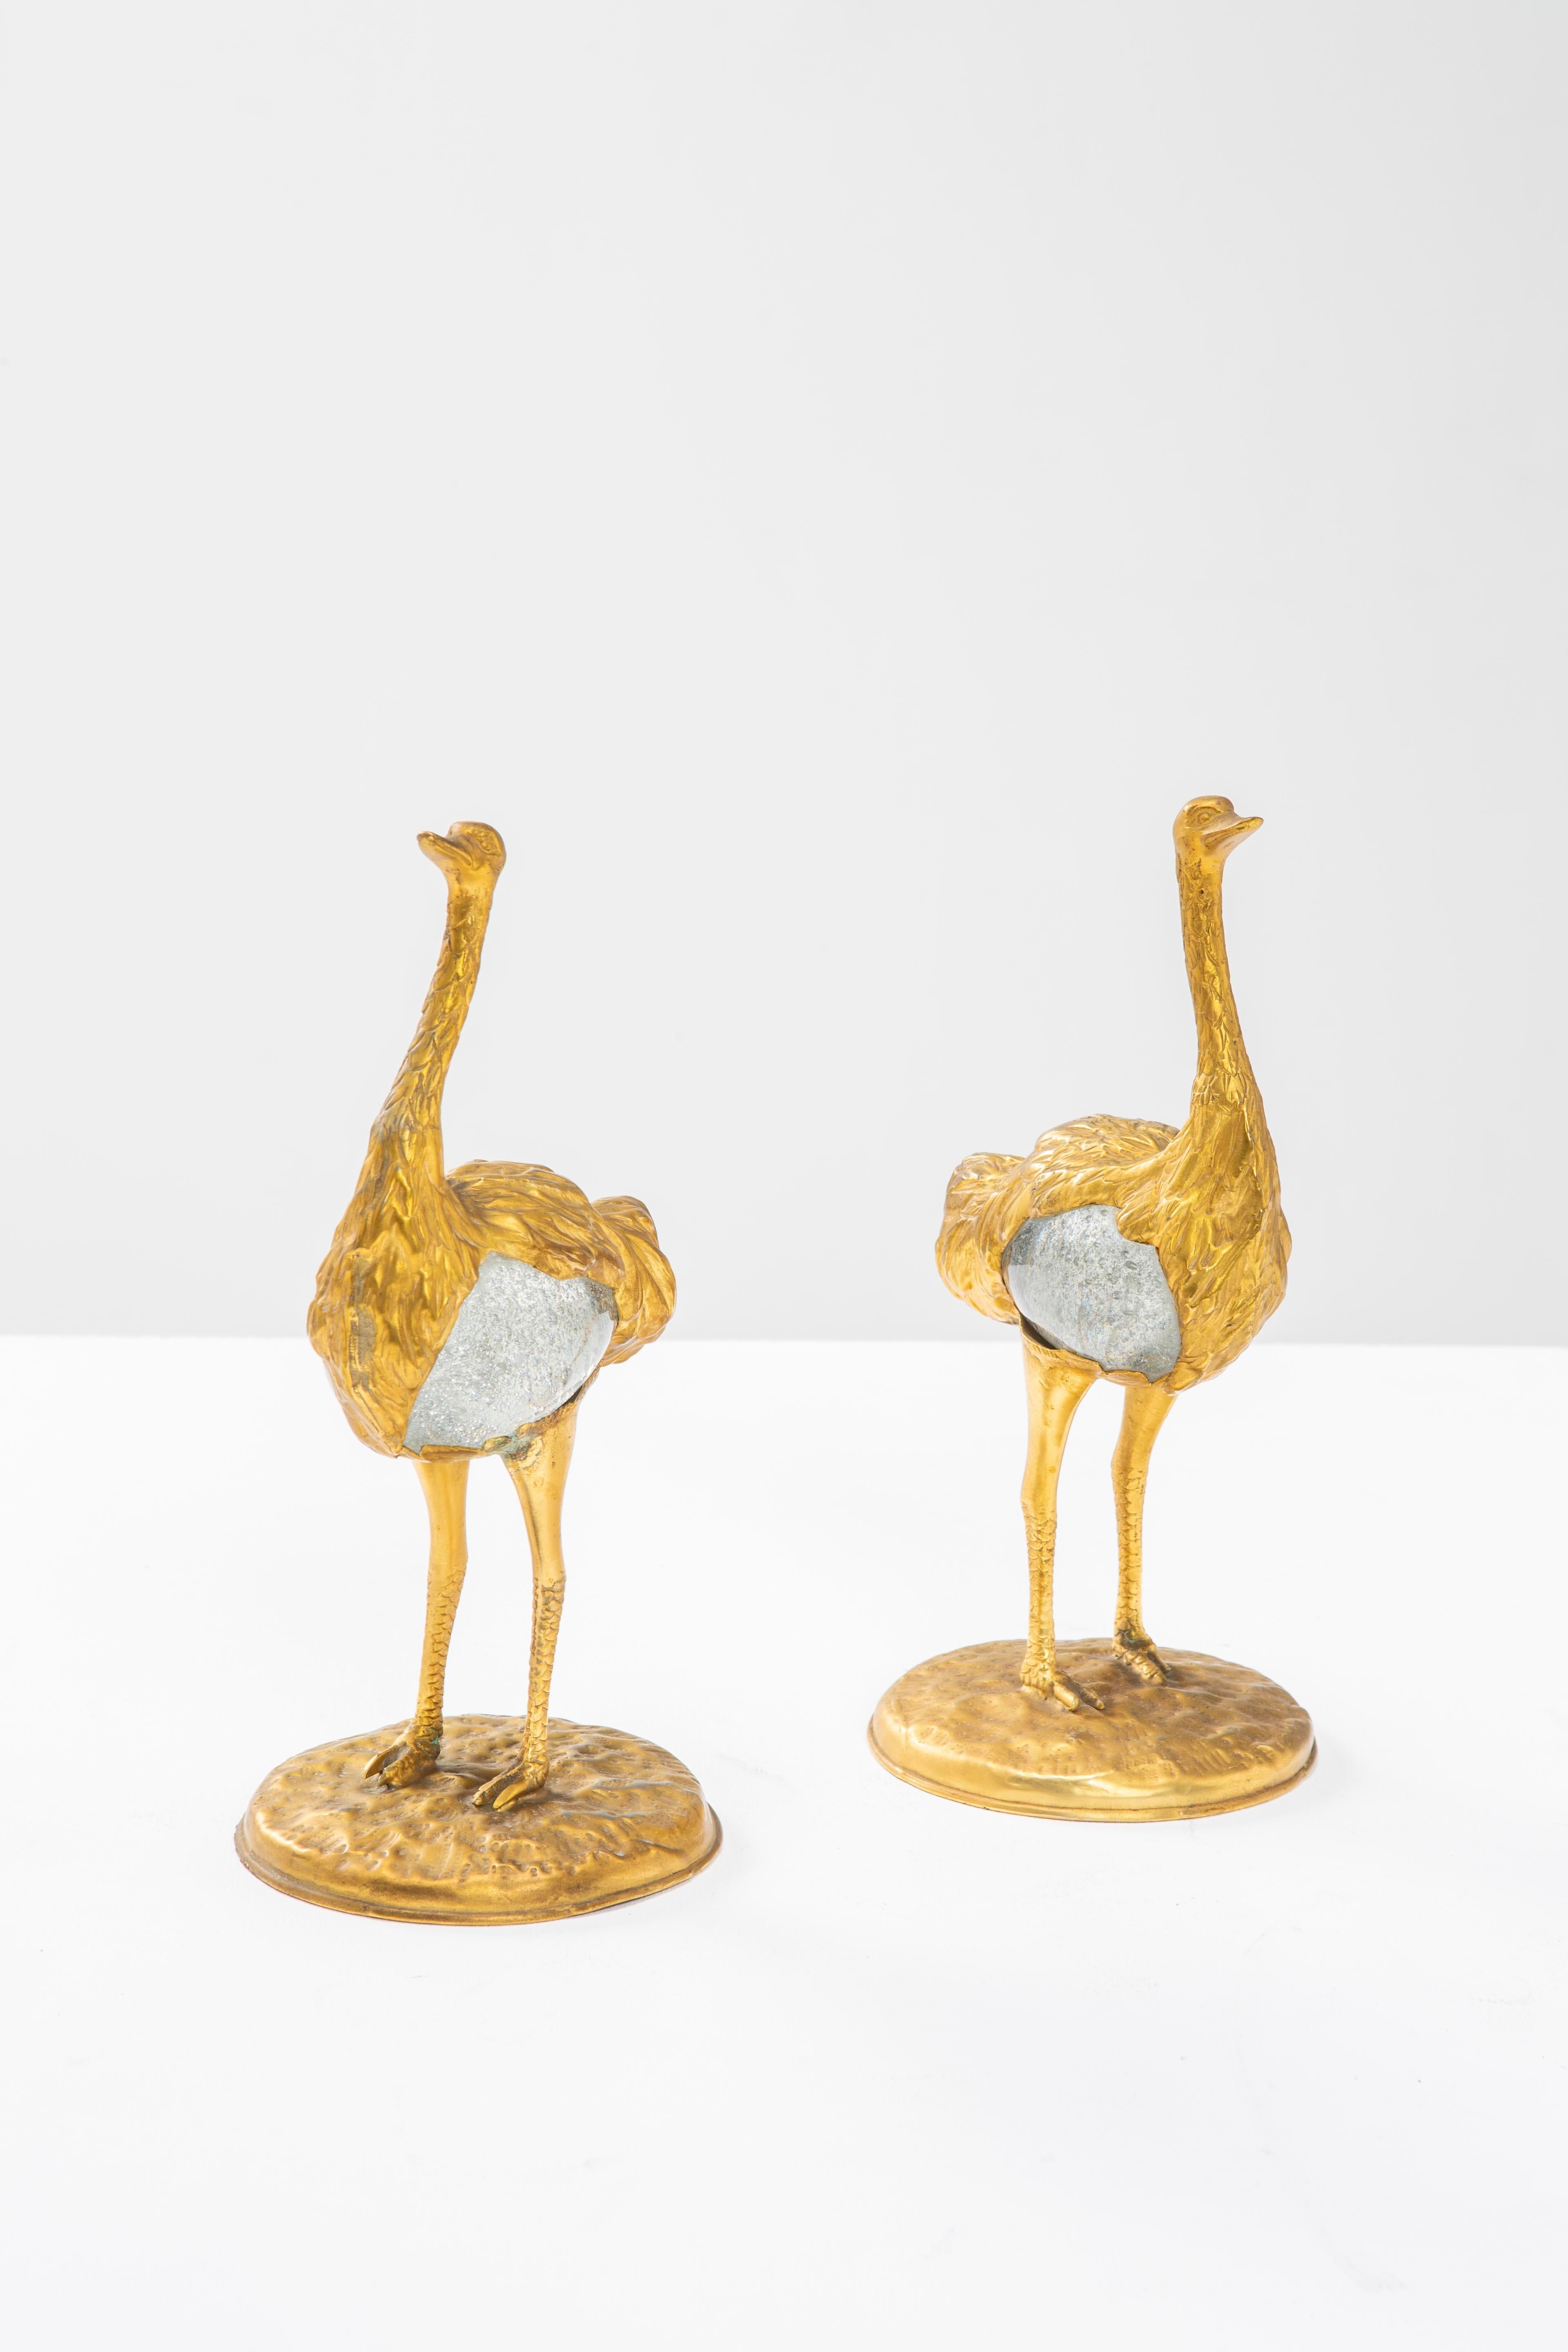 Diese beiden von Gabriella Crespi entworfenen und gefertigten Strauße sind elegante Bronzeskulpturen aus verlorenem Wachs mit kugelförmigen Körpern aus Murano-Glas von Barovier&Toso. Diese Skulpturen gehören zu der von Gabriella Crespi geschaffenen